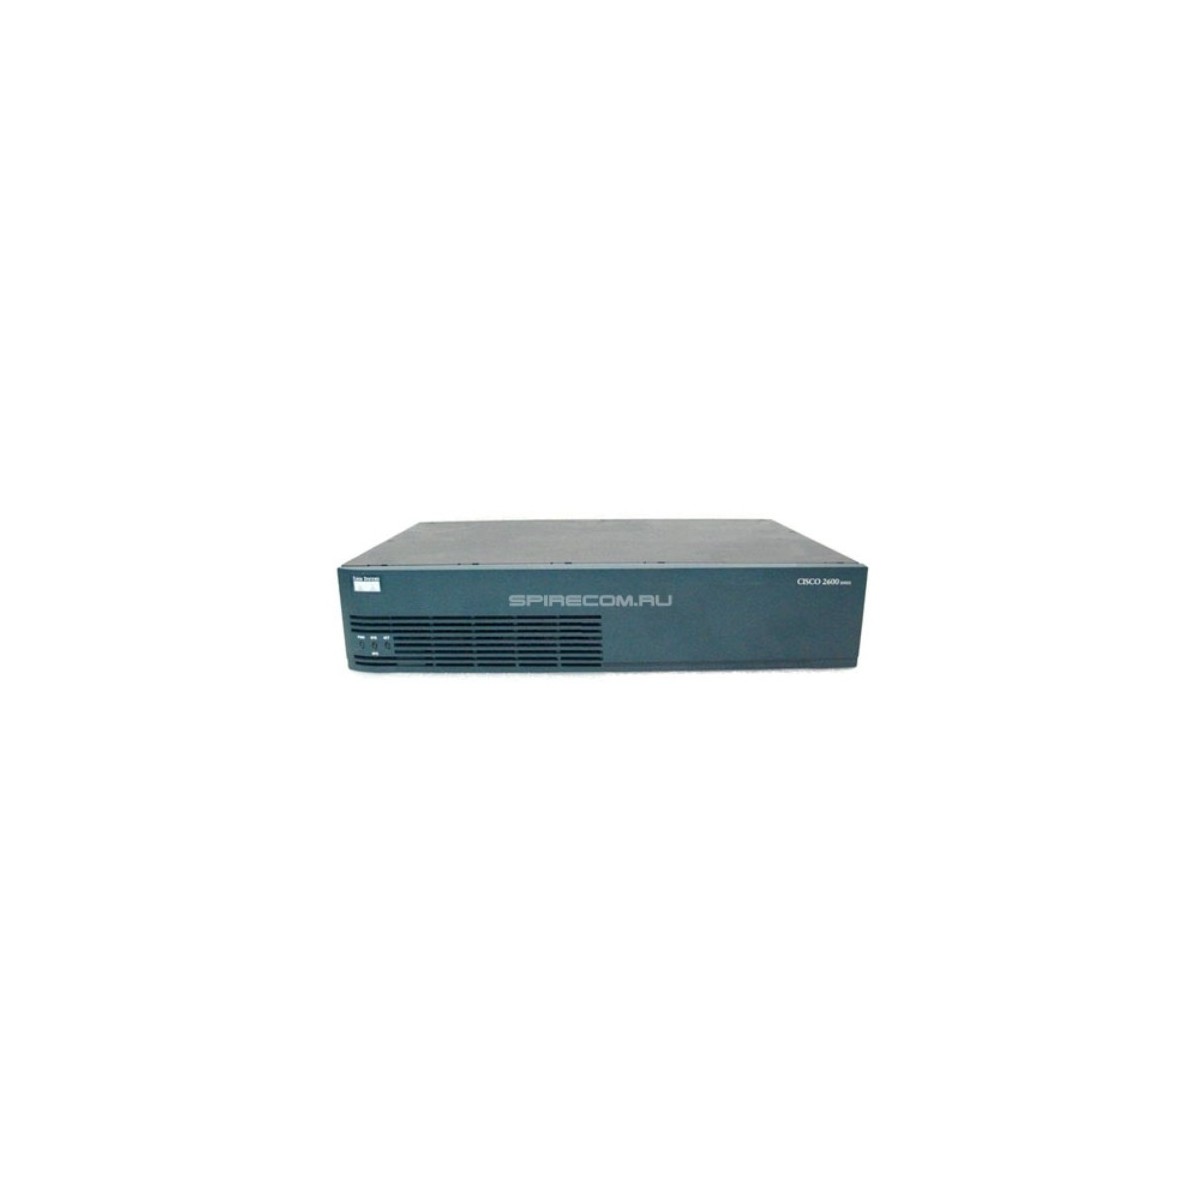 Cisco 2691 - Ethernet WAN - Fast Ethernet - Black,Blue